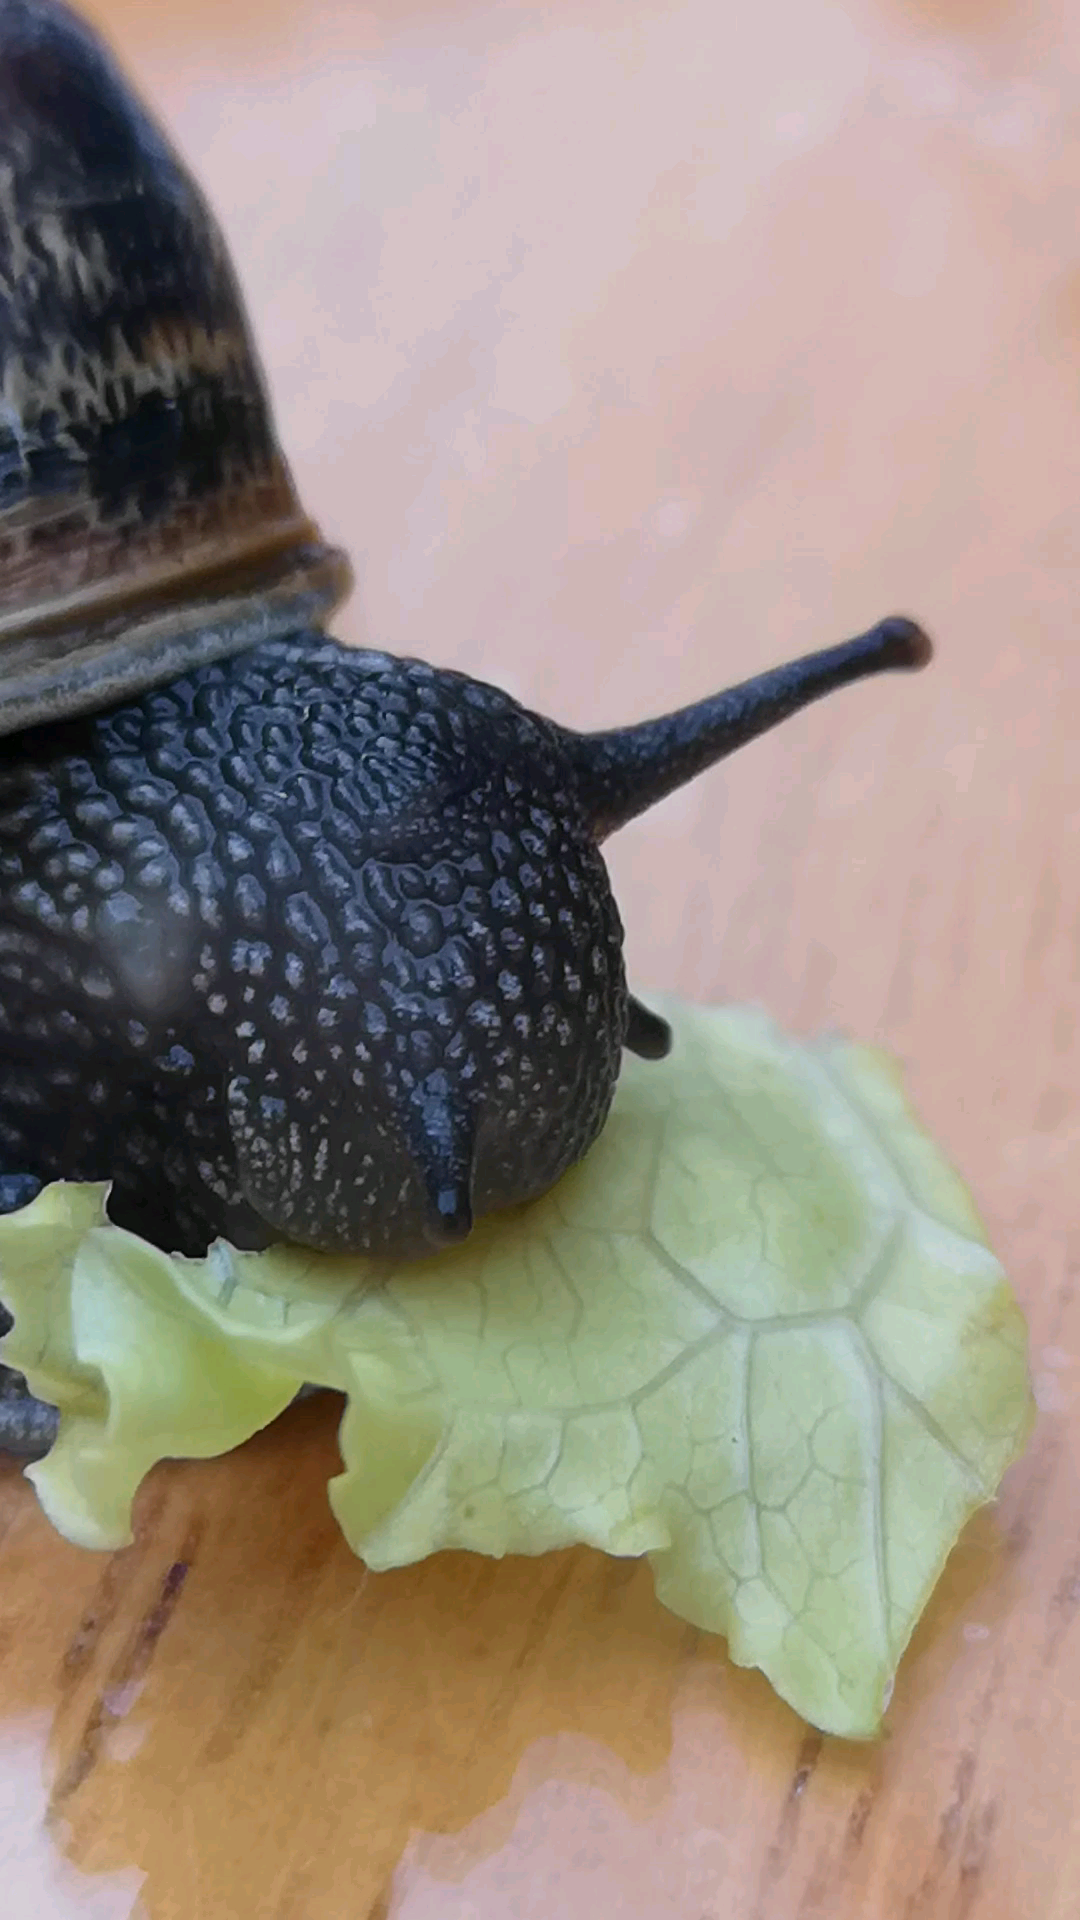 Snail eating lettuce